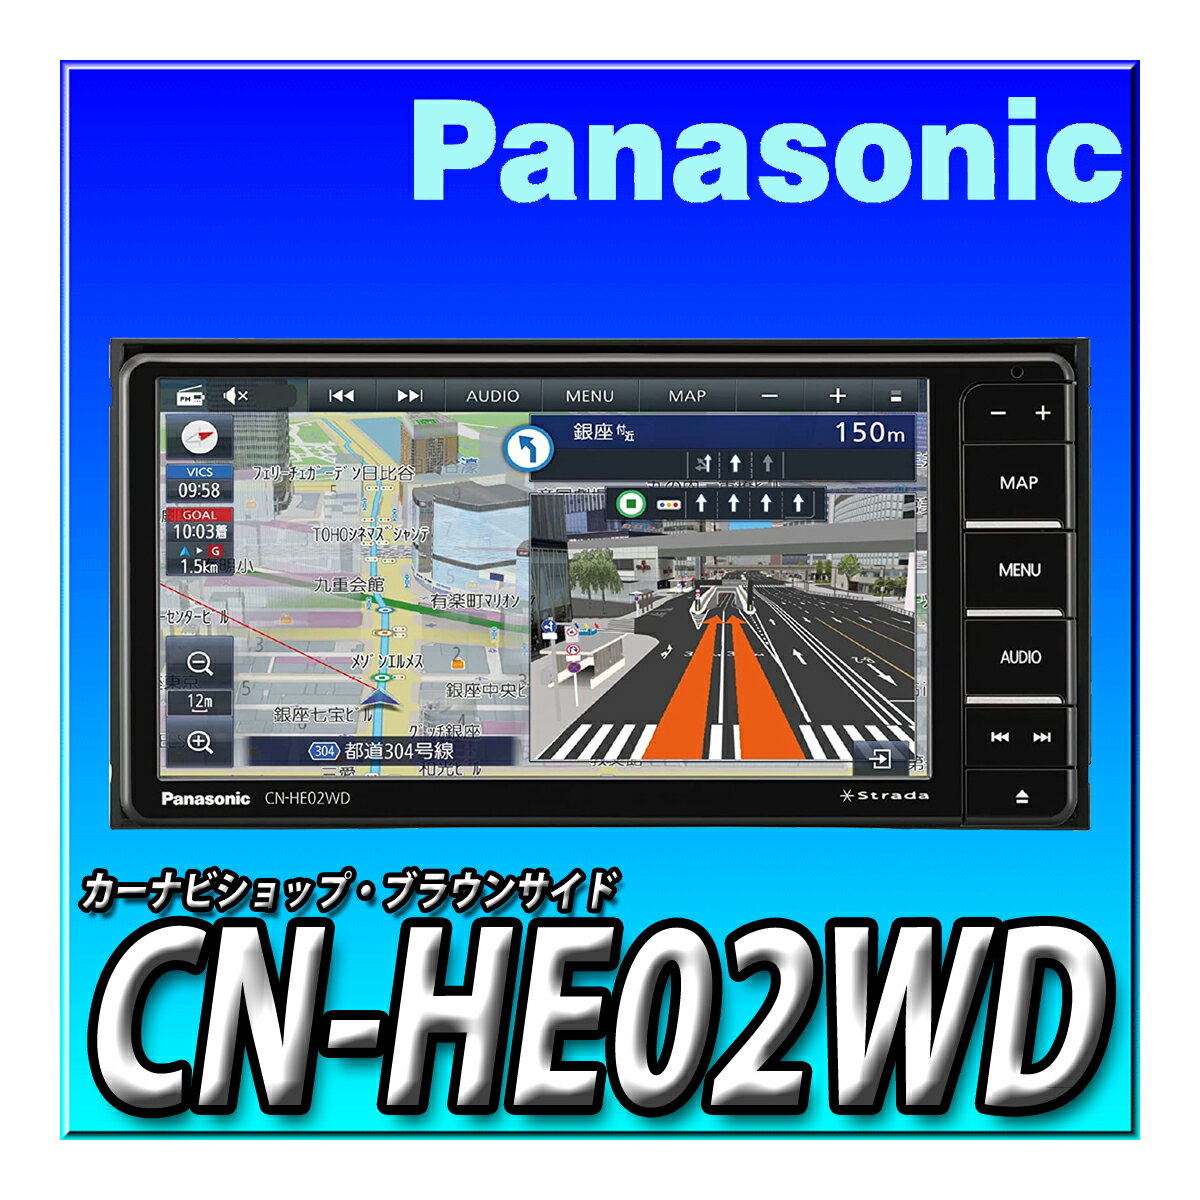 CN-HE02WD パナソニック(Panasonic) カーナビ ストラーダ 7インチ ワイド フルセグ HD液晶搭載 Bluetooth接続 ETC2.0車載器対応ドラレコ連携対応